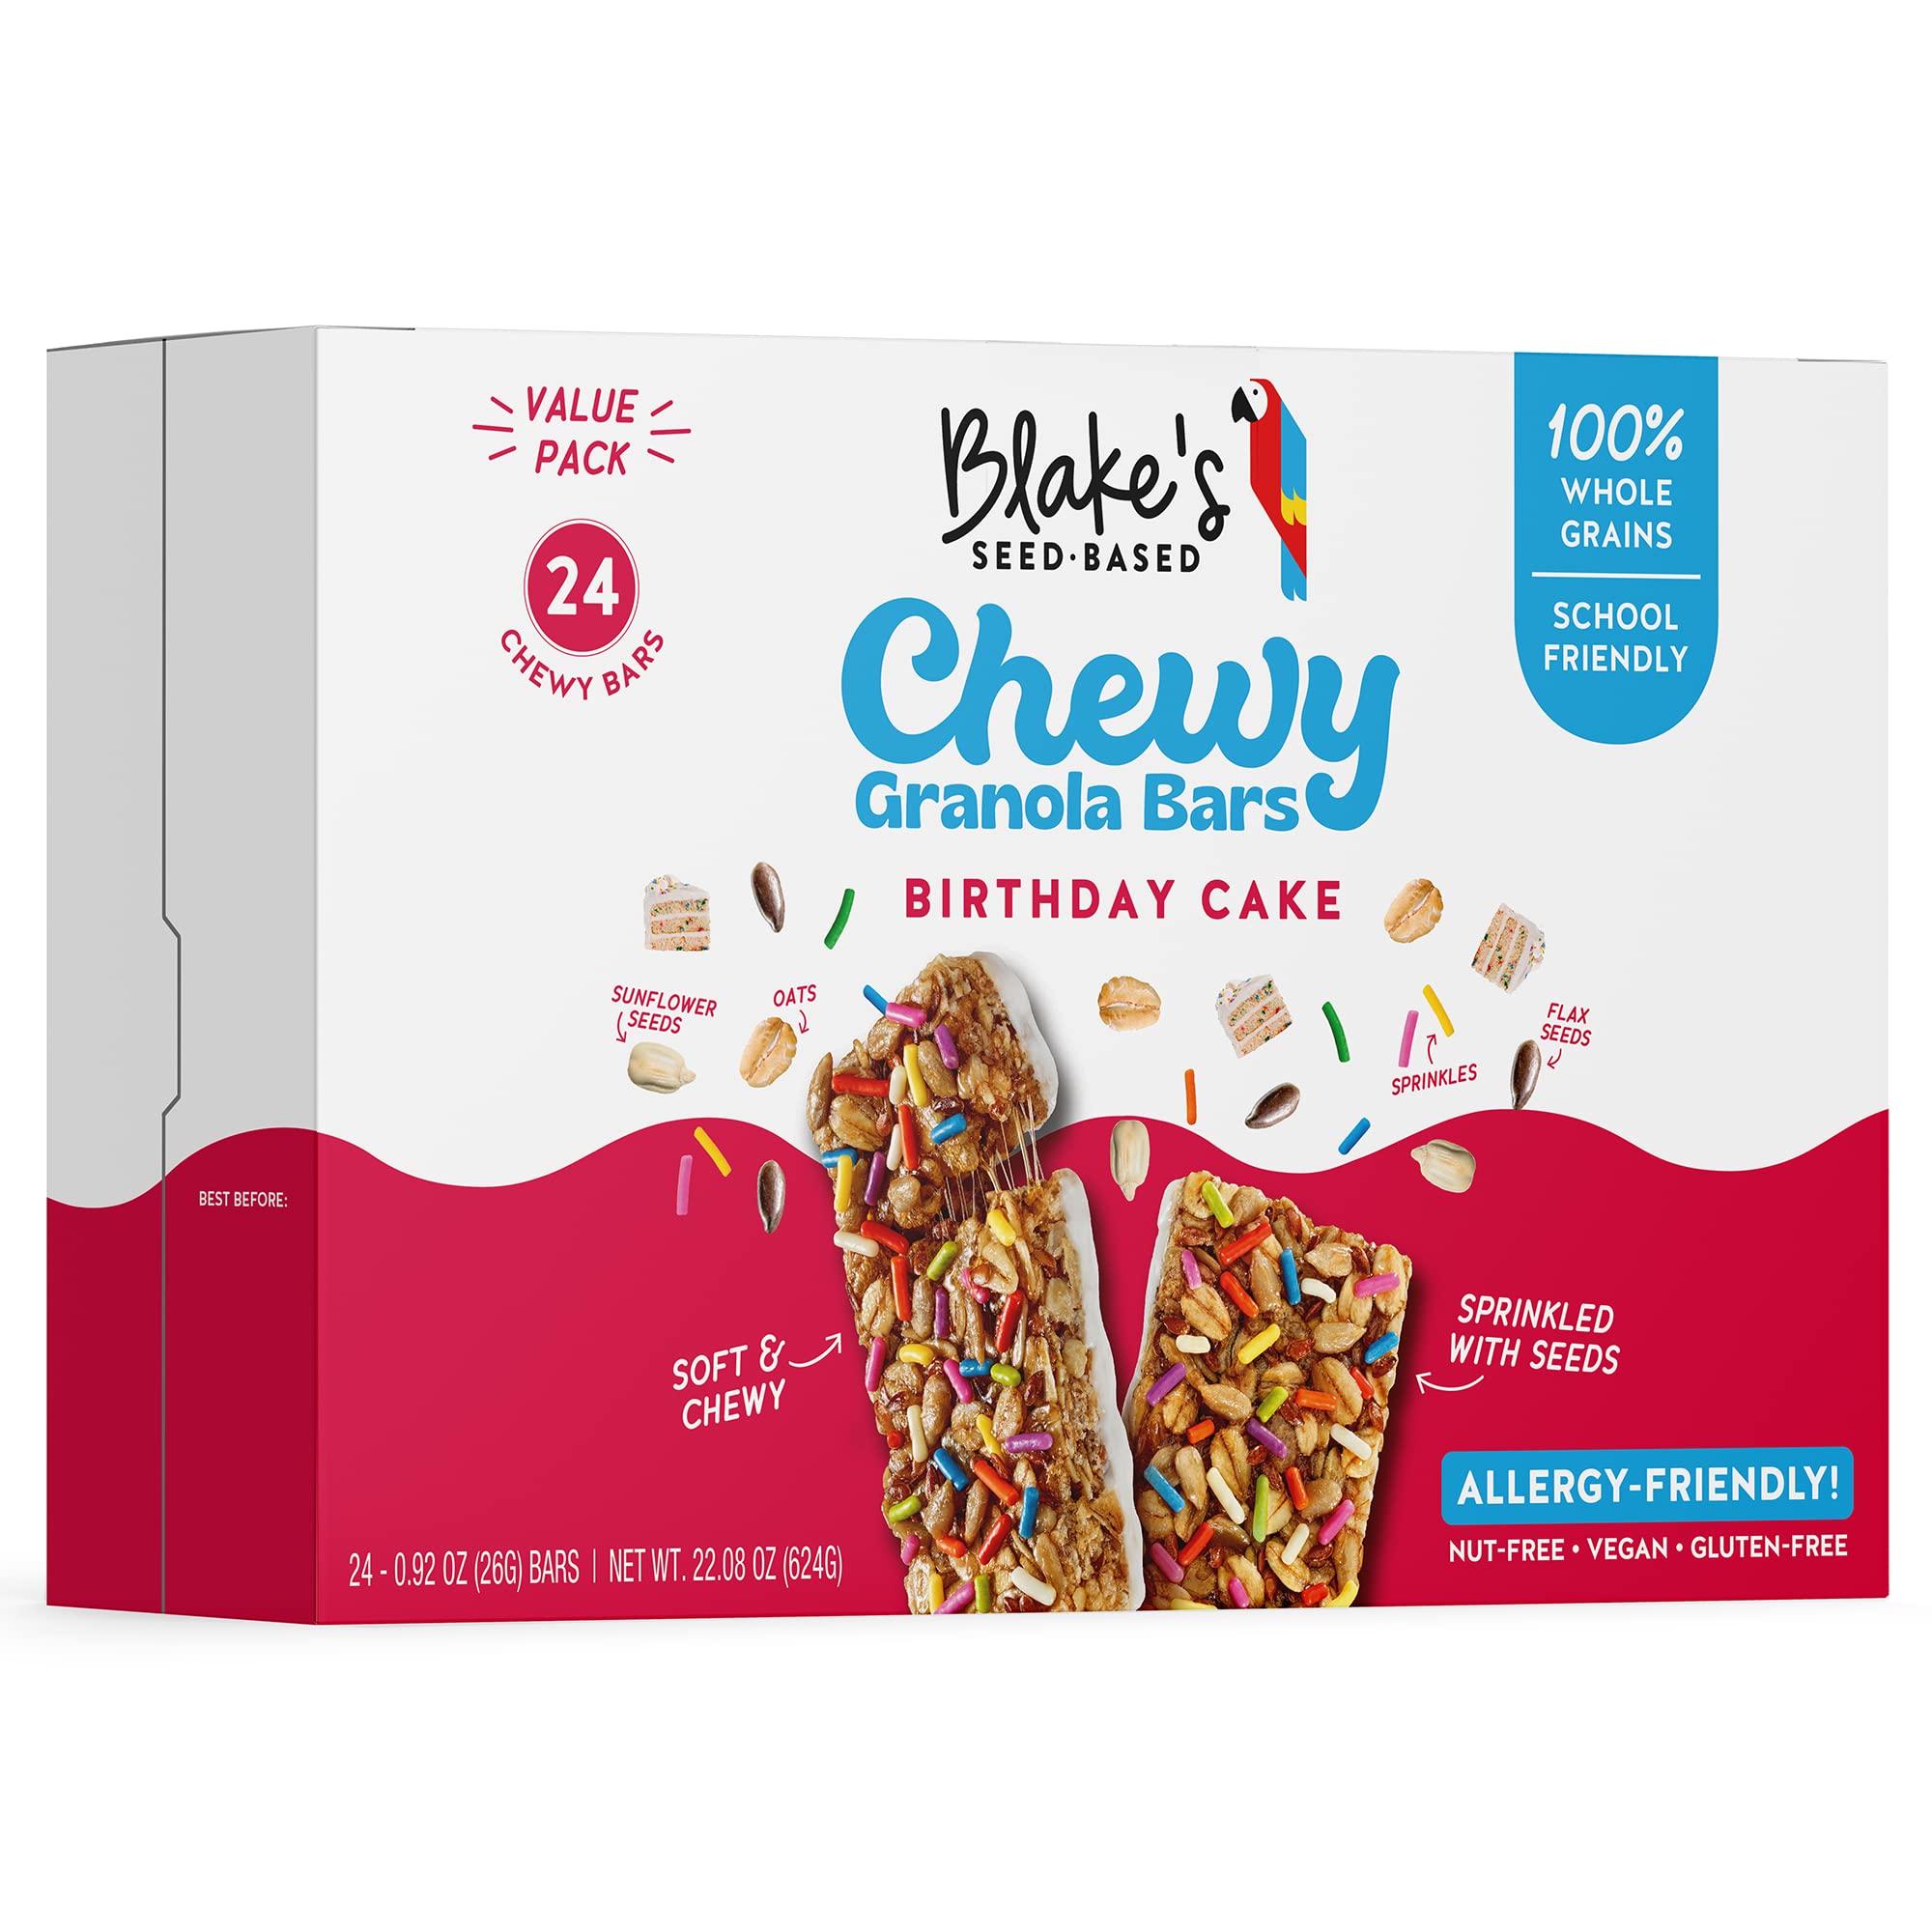 Blake's Seed Based Raspberry Snack Bars, 1.23 oz, 12 Count